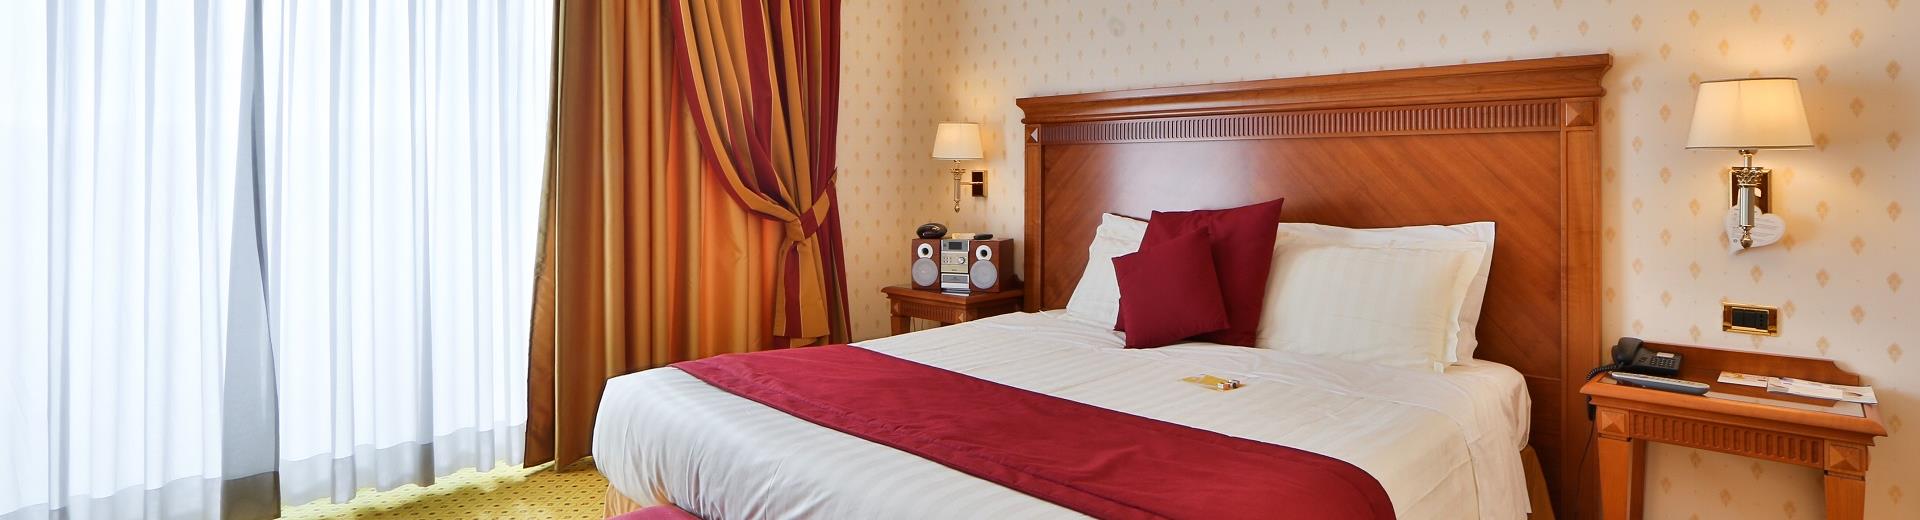 Scopri le camere e i comfort del Best Western Hotel Viterbo 4 stelle